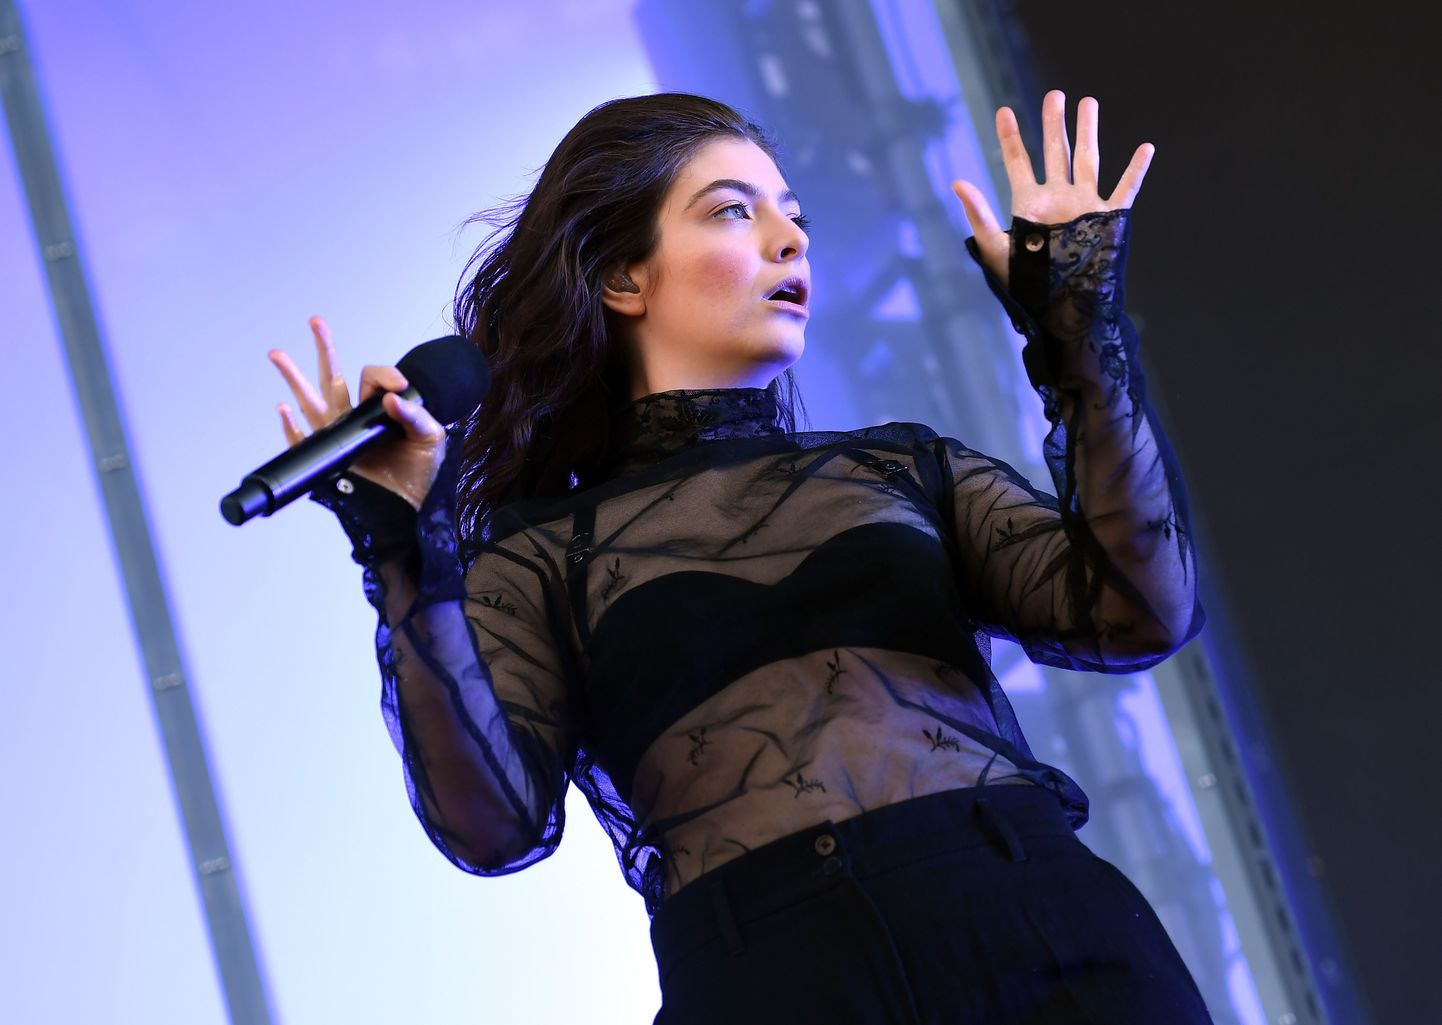 Lorde'i viimasest albumist on möödas neli aastat.